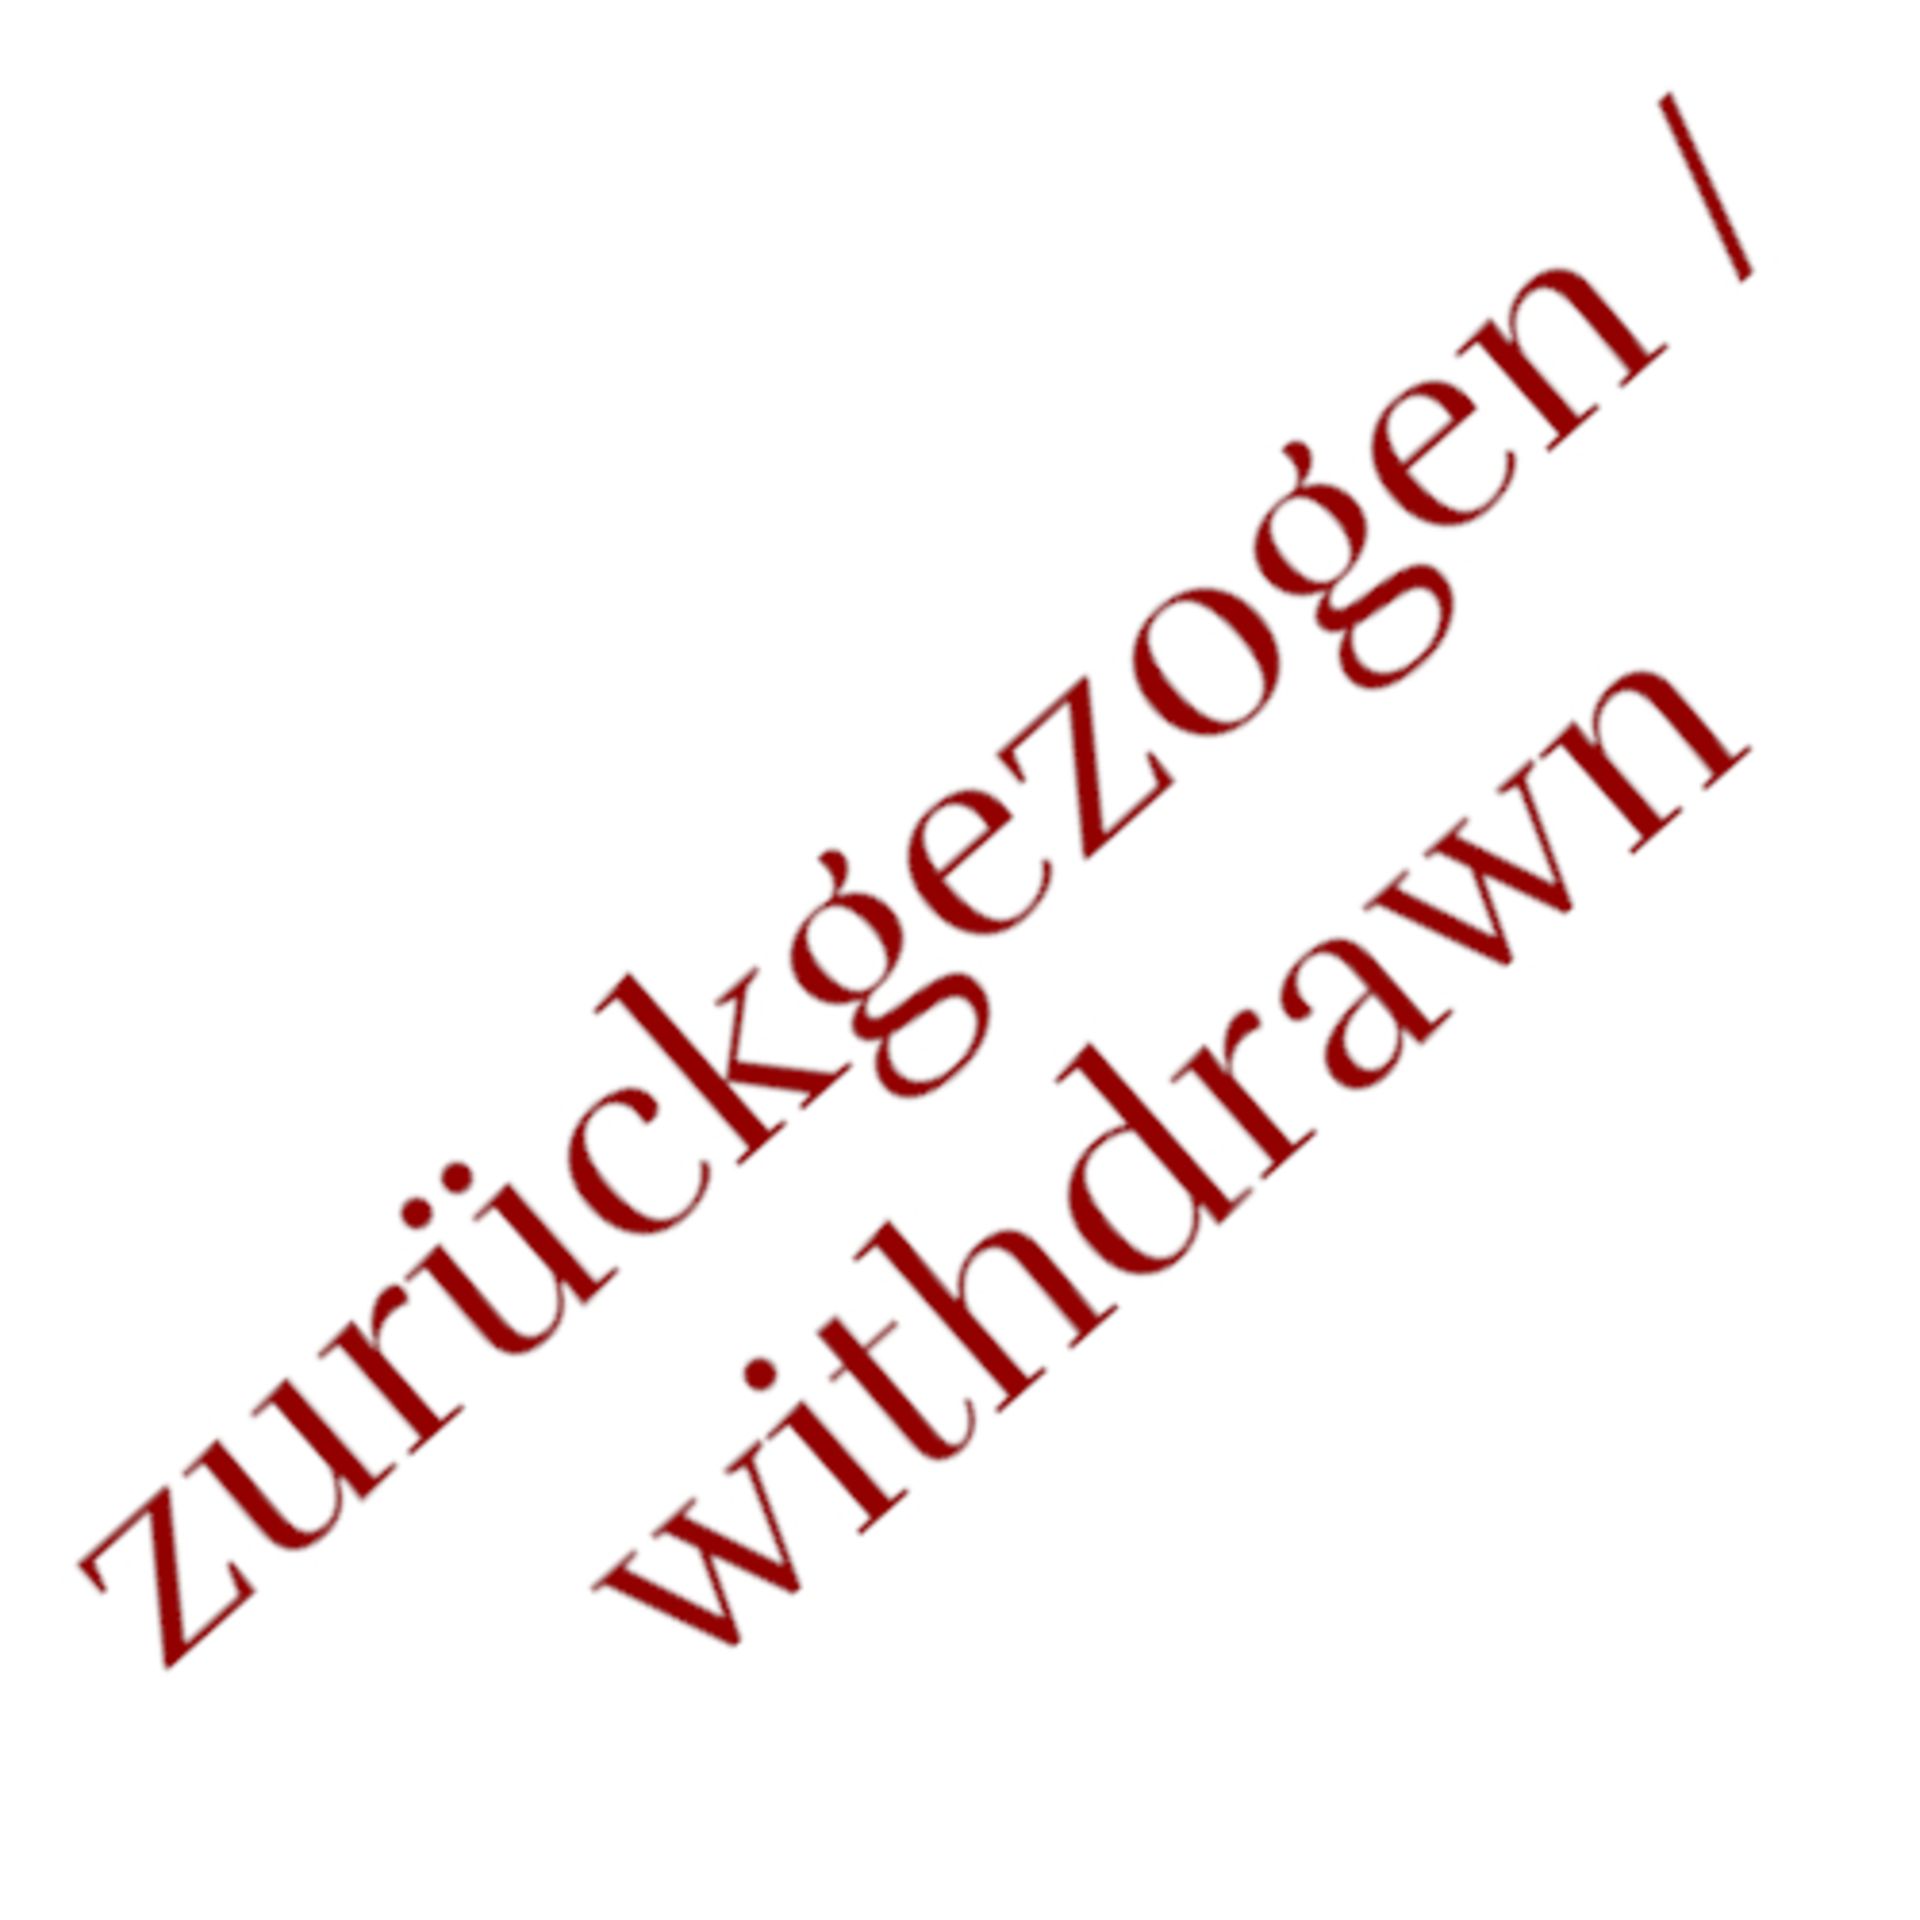 zurückgezogen/withdrawn